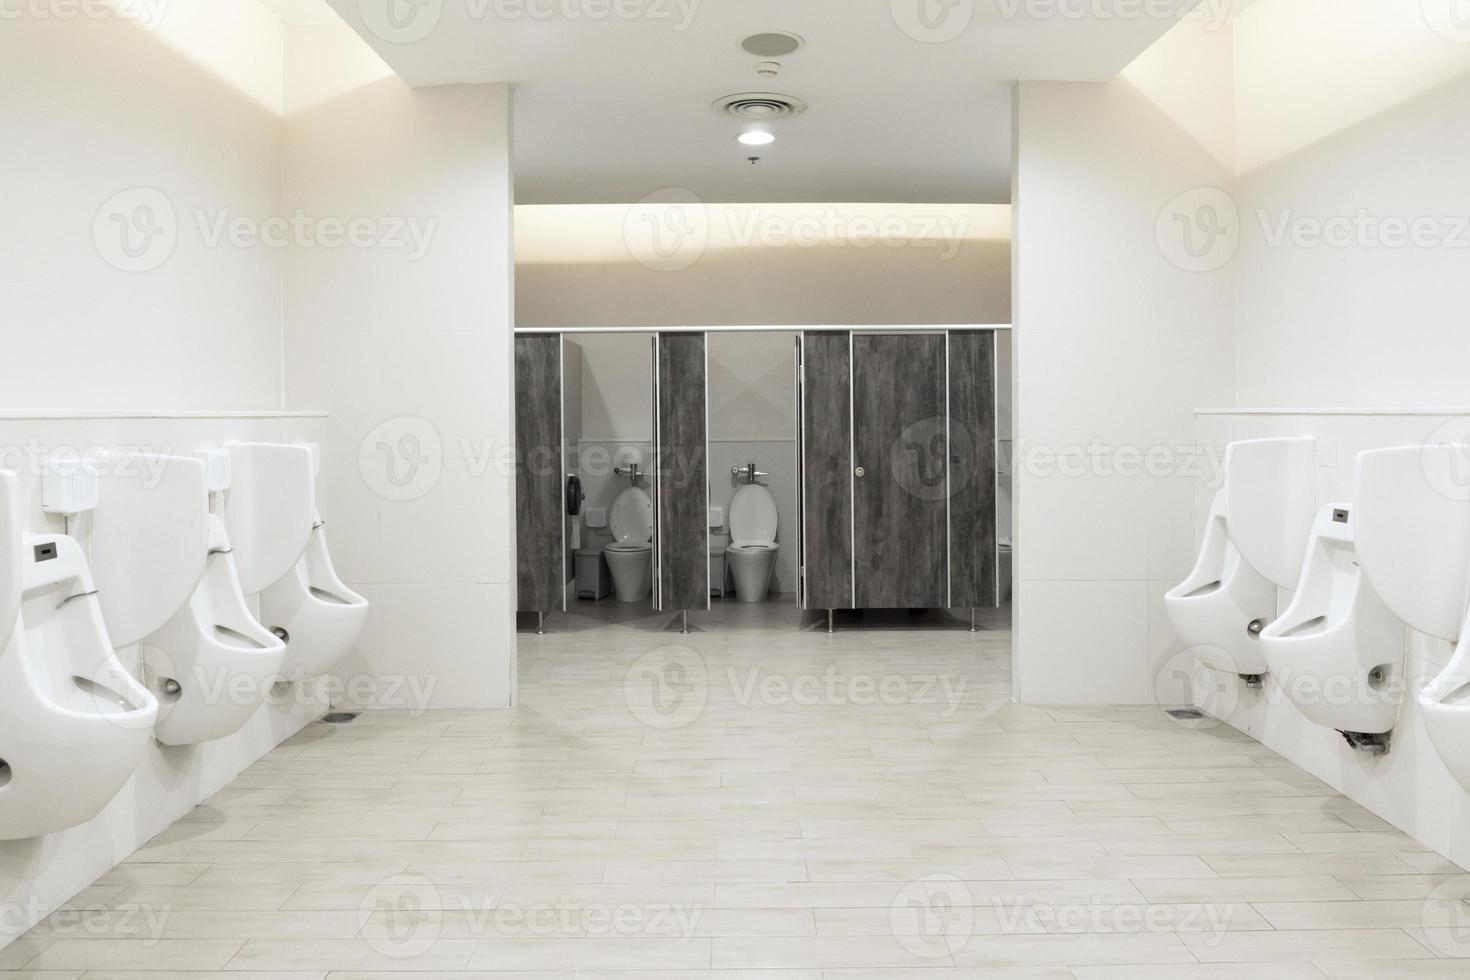 Urinale im Herrenzimmer, Toilettenschüssel in einem modernen Badezimmer mit Mülleimern und Toilettenpapier, Toilettenspülung, sauberes Badezimmer foto